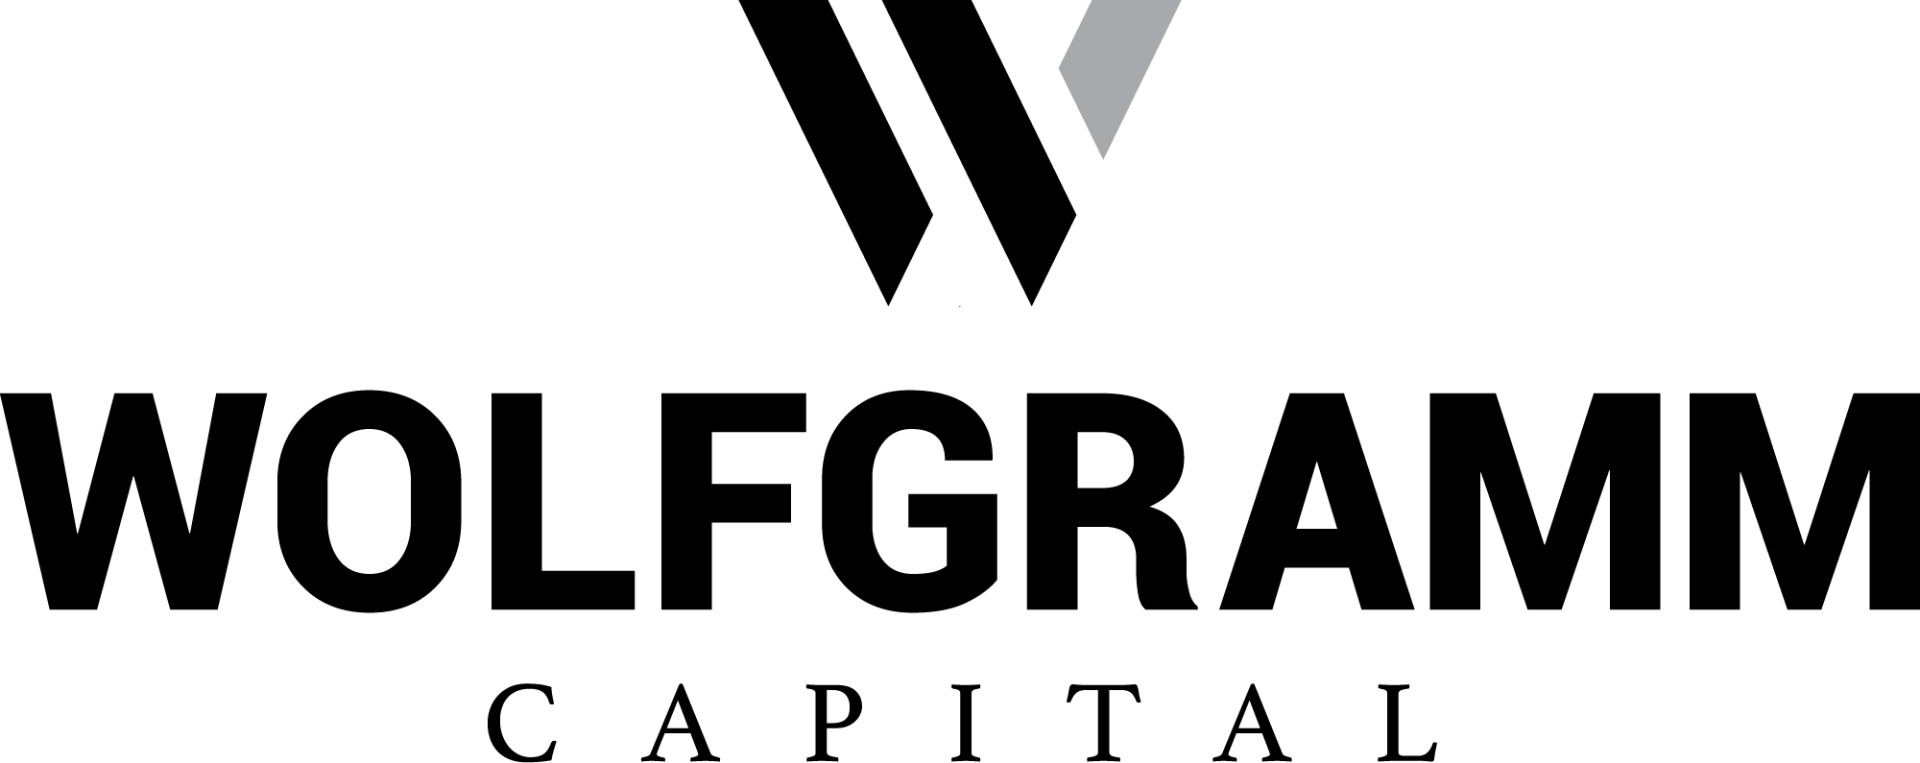 WOLFGRAMM site_logo